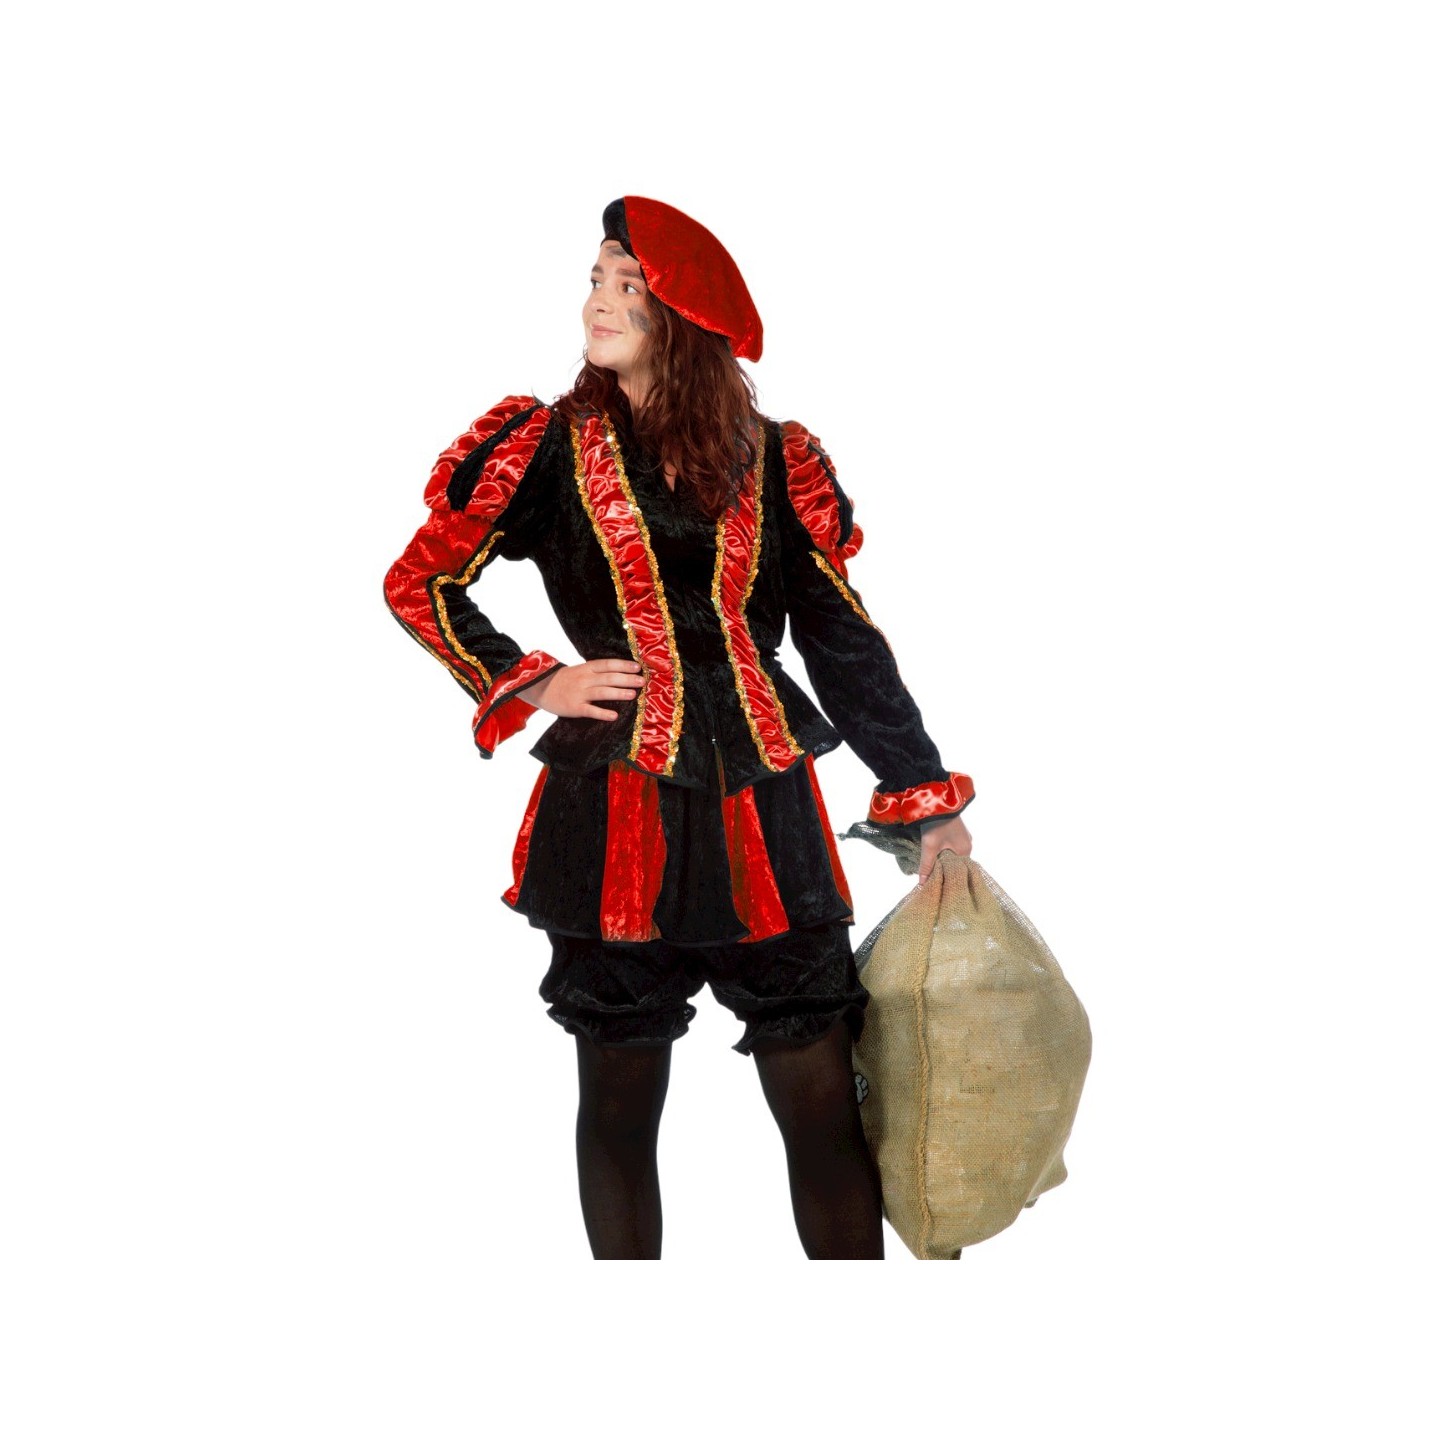 Voorstellen Toestemming Verkeerd Zwarte pietenpak - dames Piet kostuum kopen ?| Jokershop.be